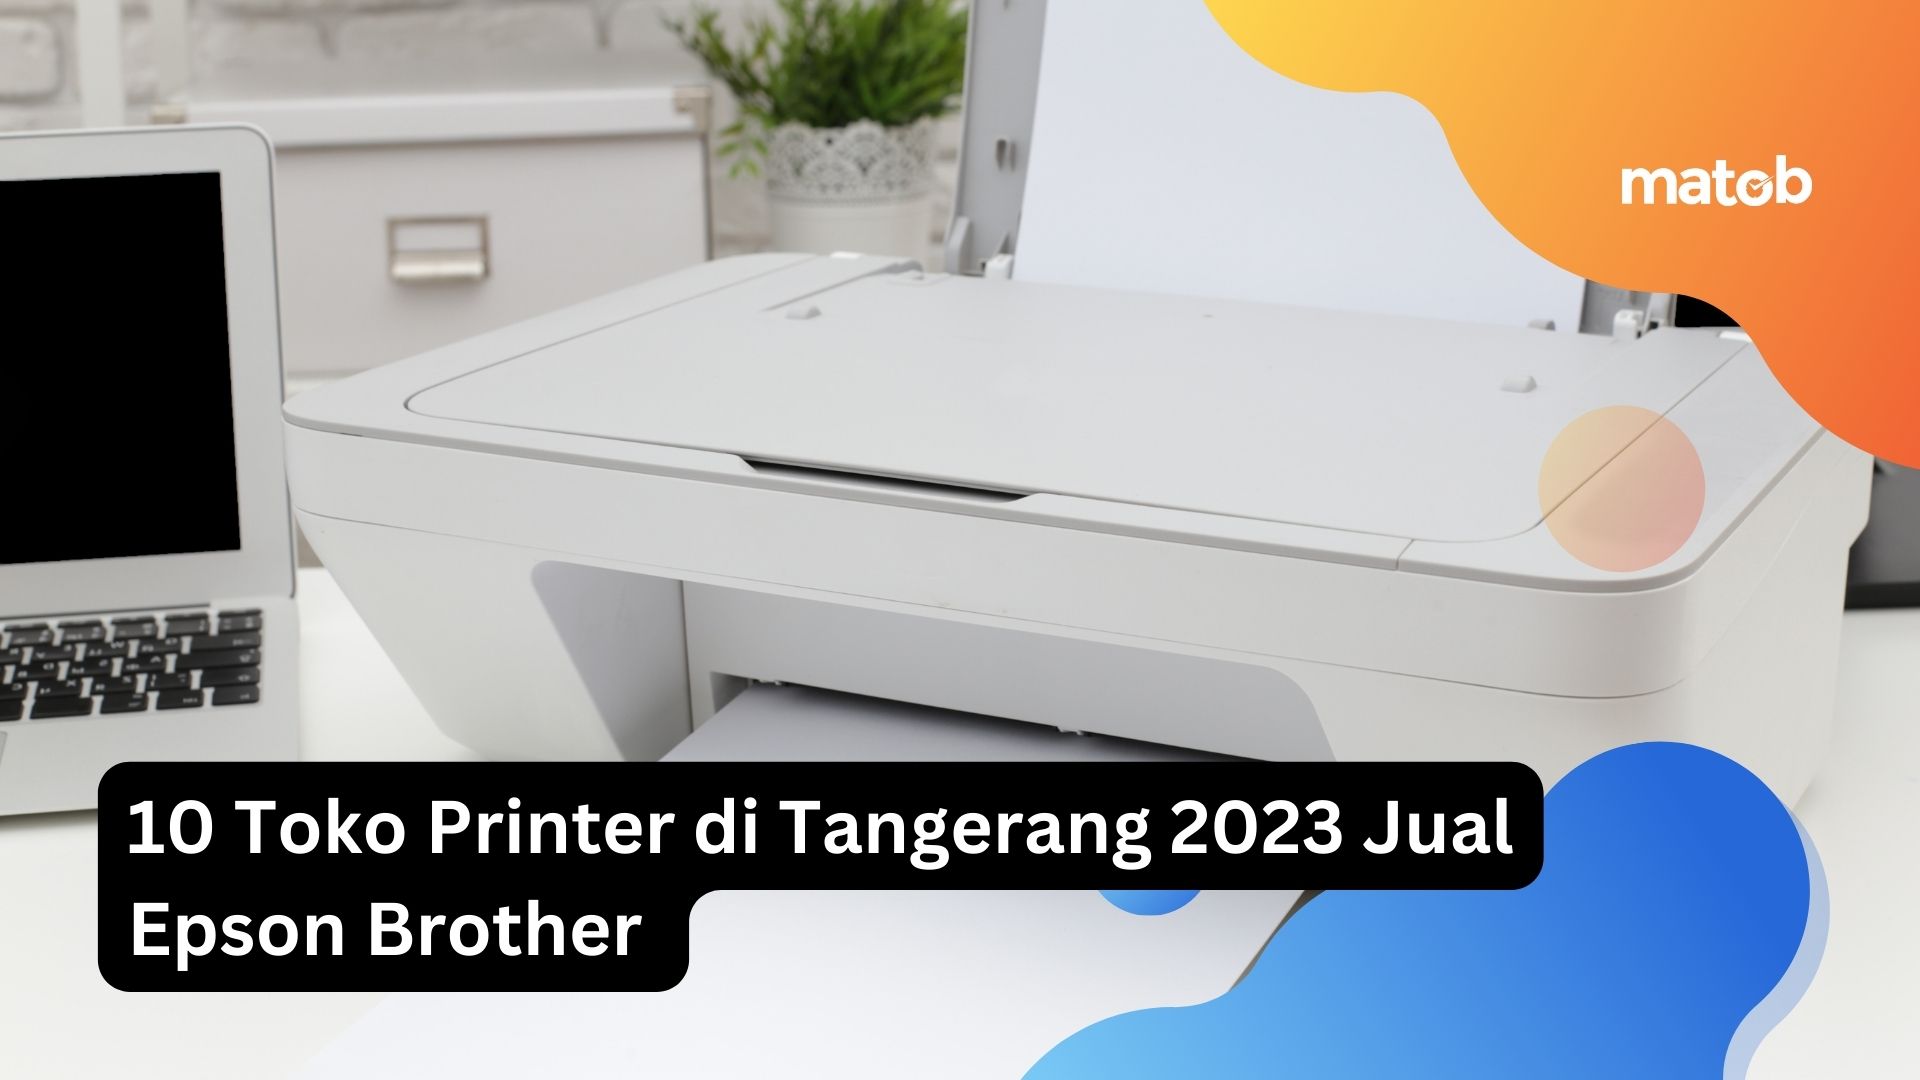 10 Toko Printer di Tangerang 2023 Jual Epson Brother